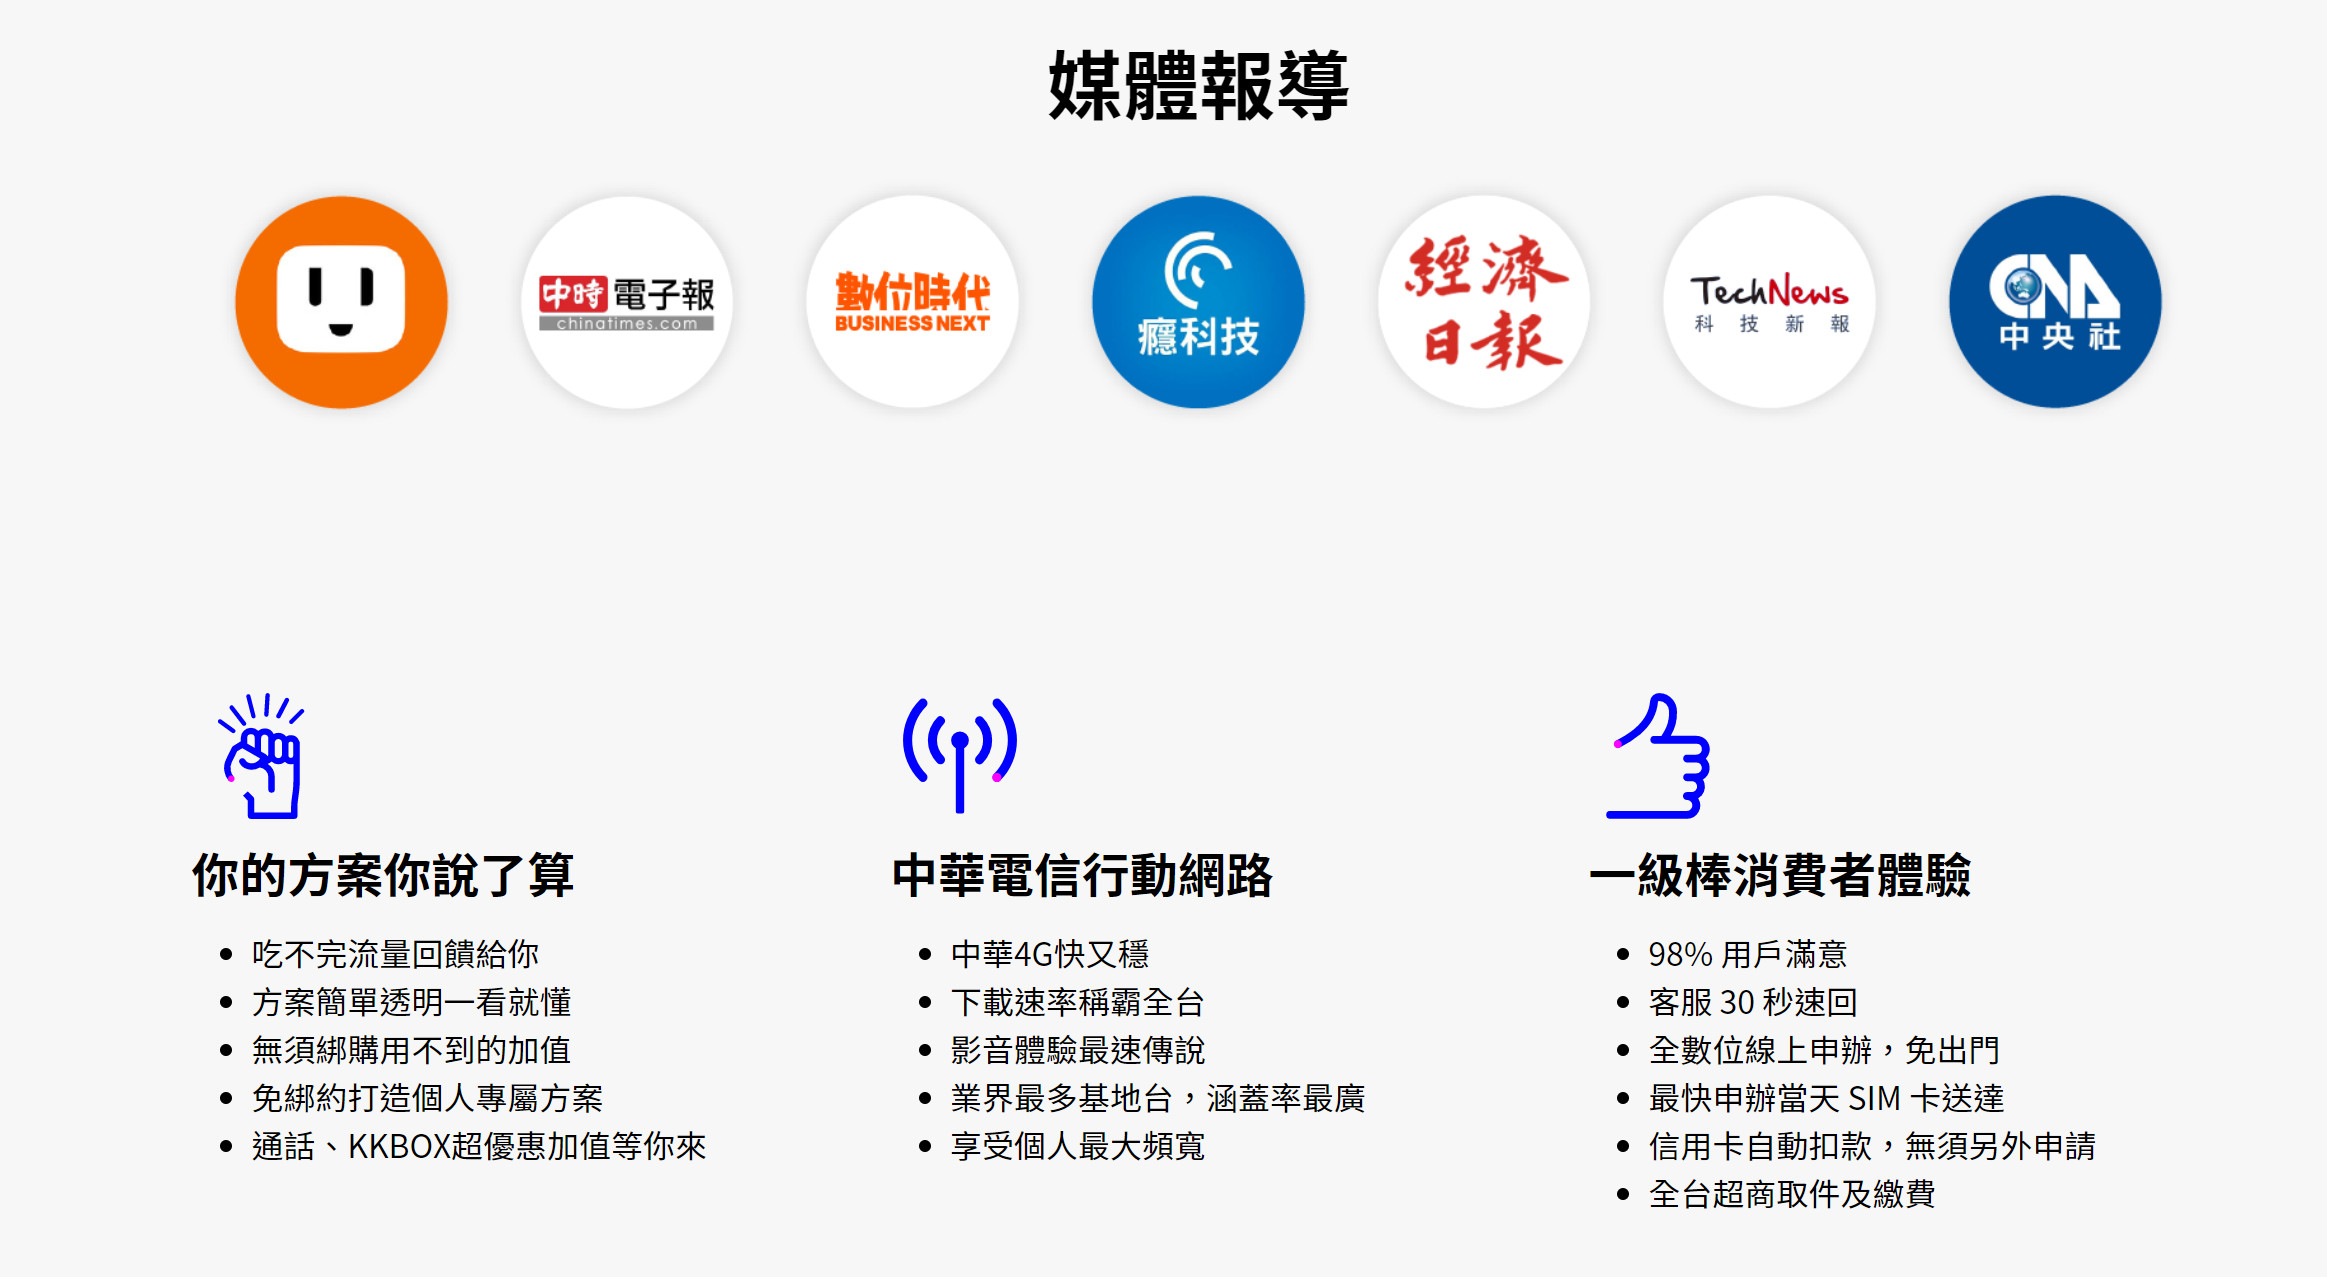 【無框行動】新春專案，中華電信大4G網路吃到飽466元，低流量只要166元!超適合搭配台灣之星雙11專案。 - 無框行動網路 - 敗家達人推薦